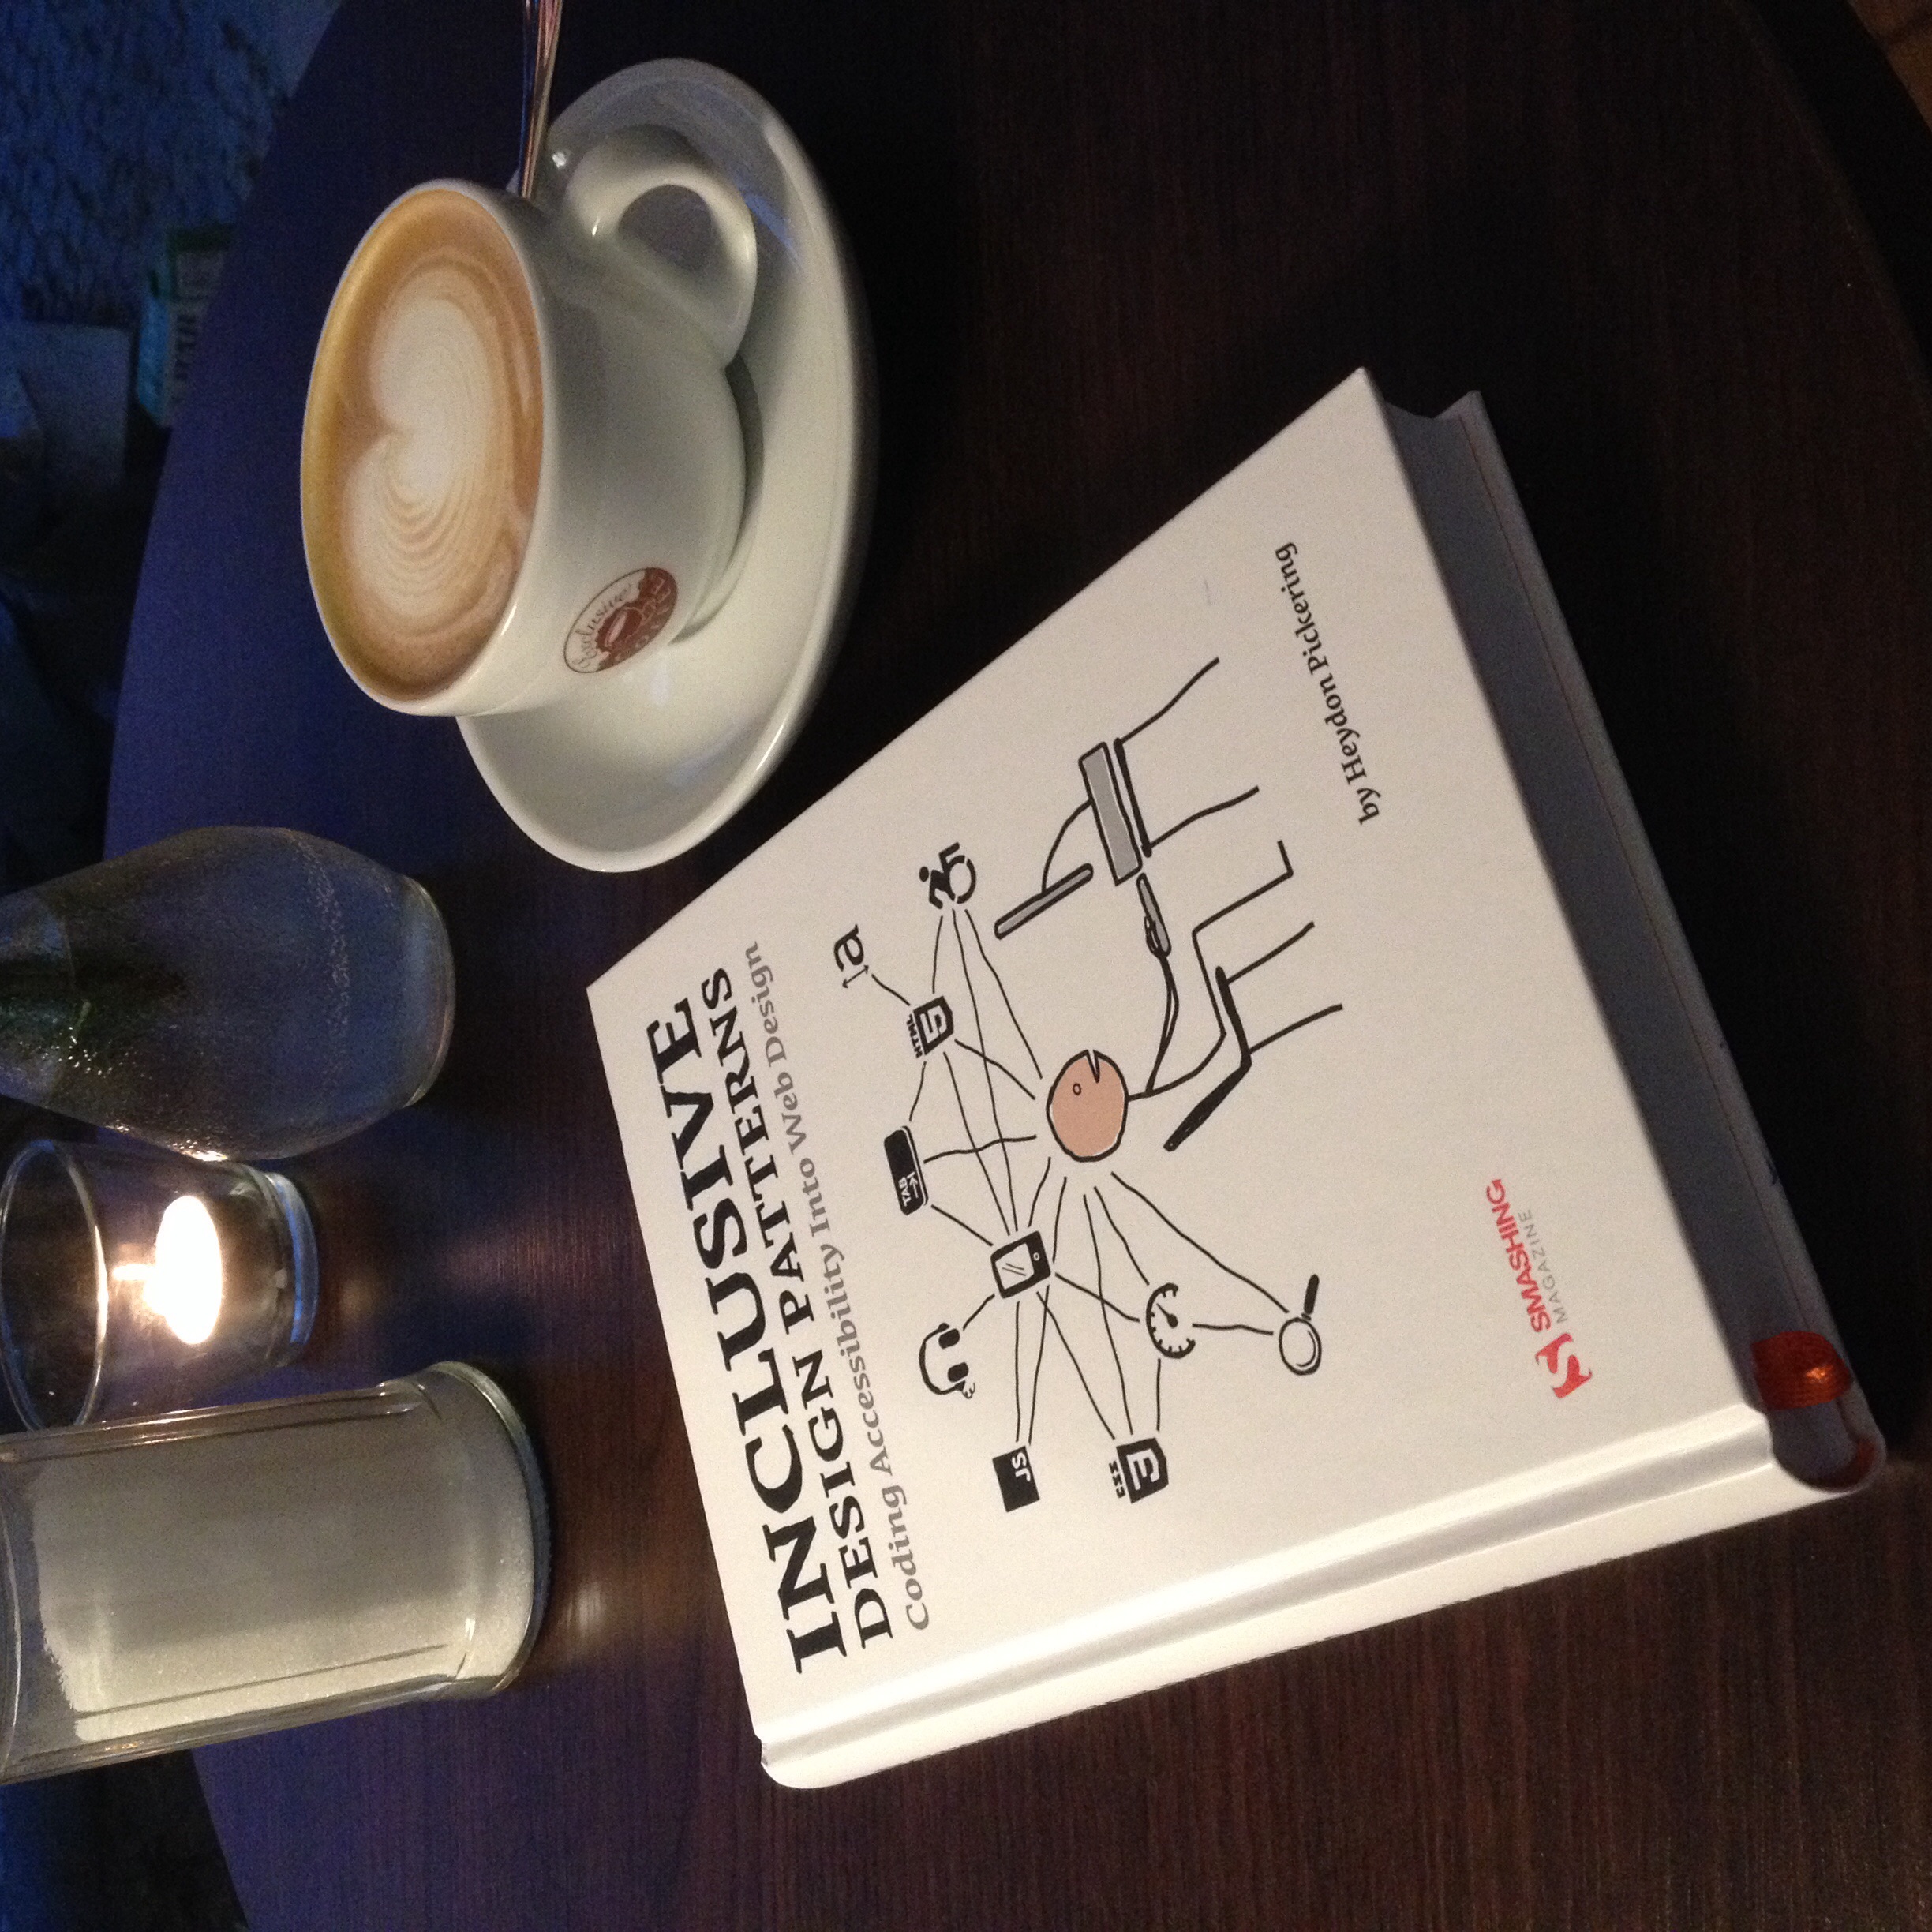 Buch „Inclusive Design Patterns“ auf Tisch neben Cappuccino